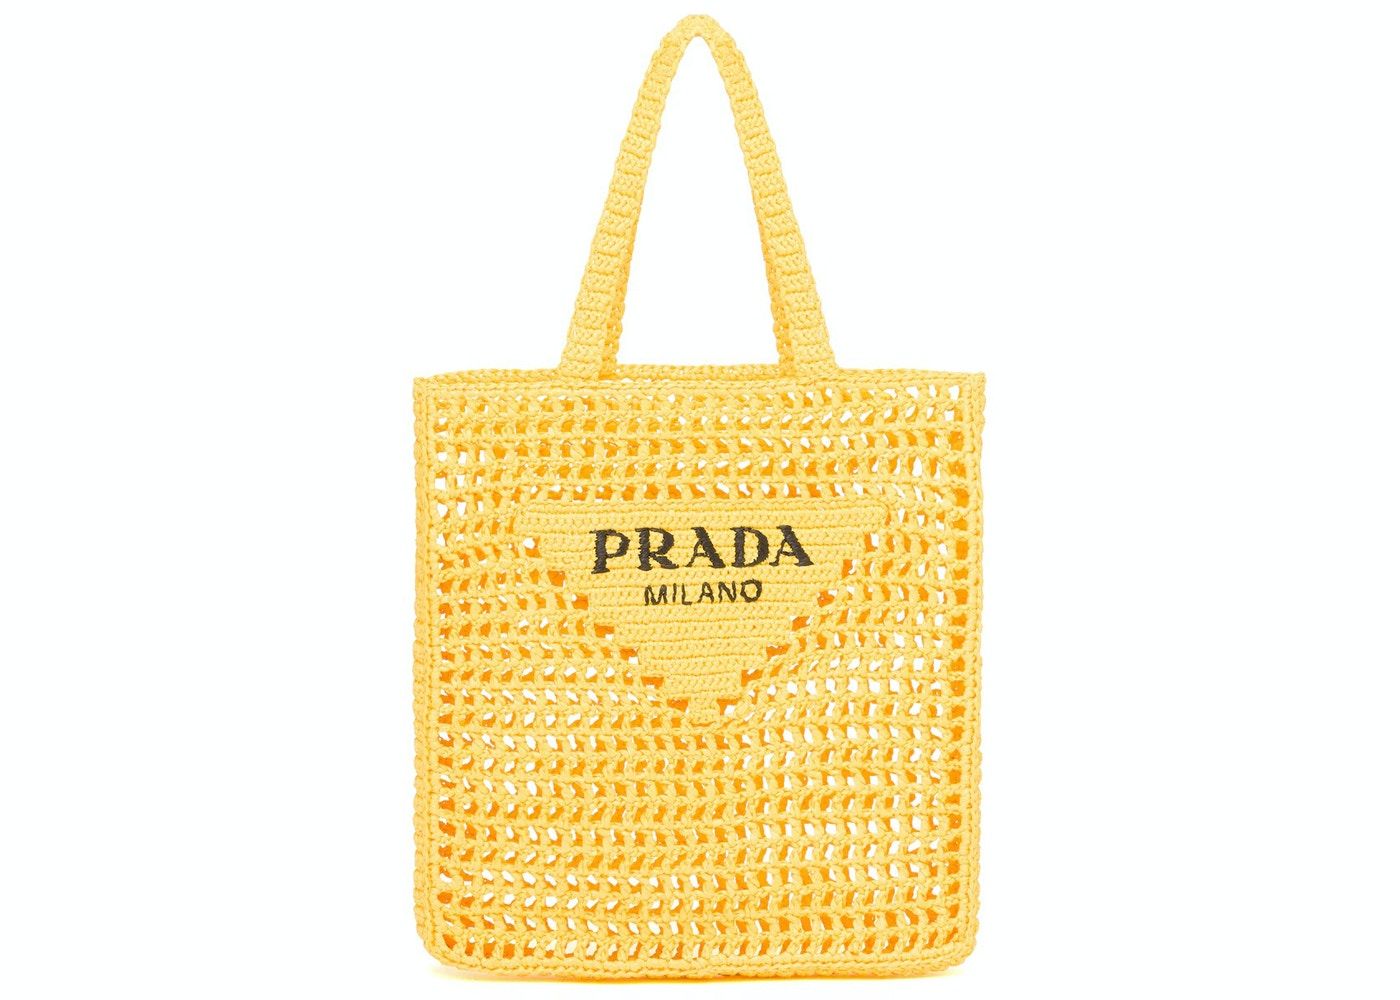 PRADA cowhide leather Shoulder Bag gold buckle handle shoulder bag gre –  Brand Off Hong Kong Online Store